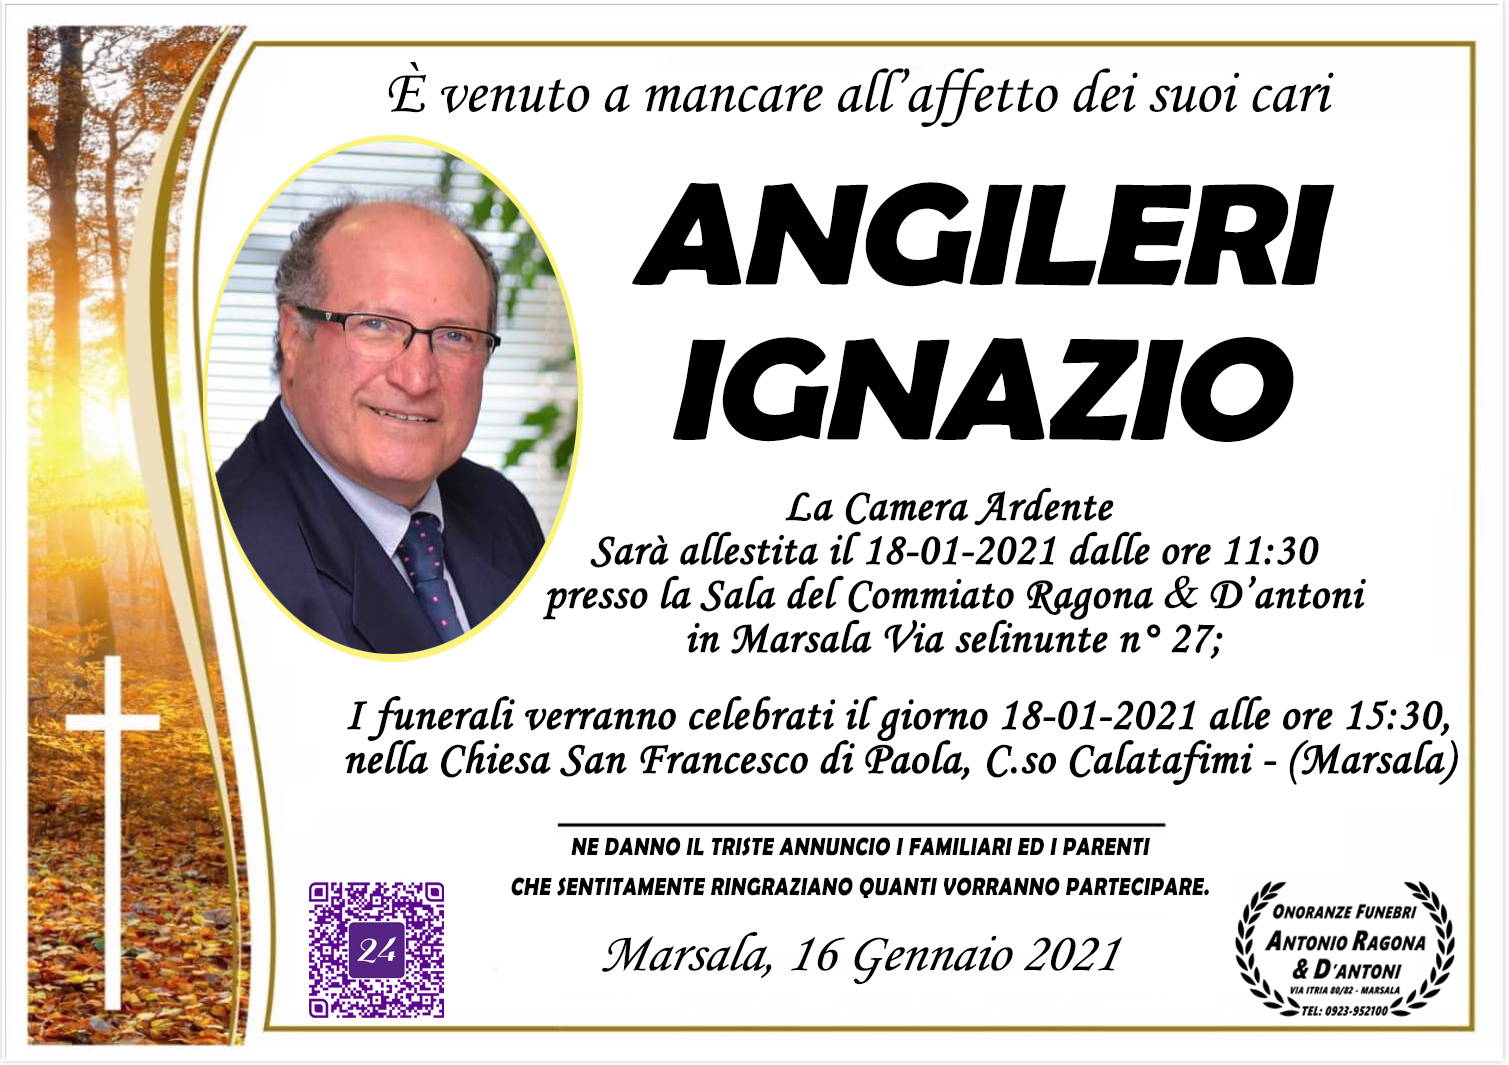 Ignazio Angileri